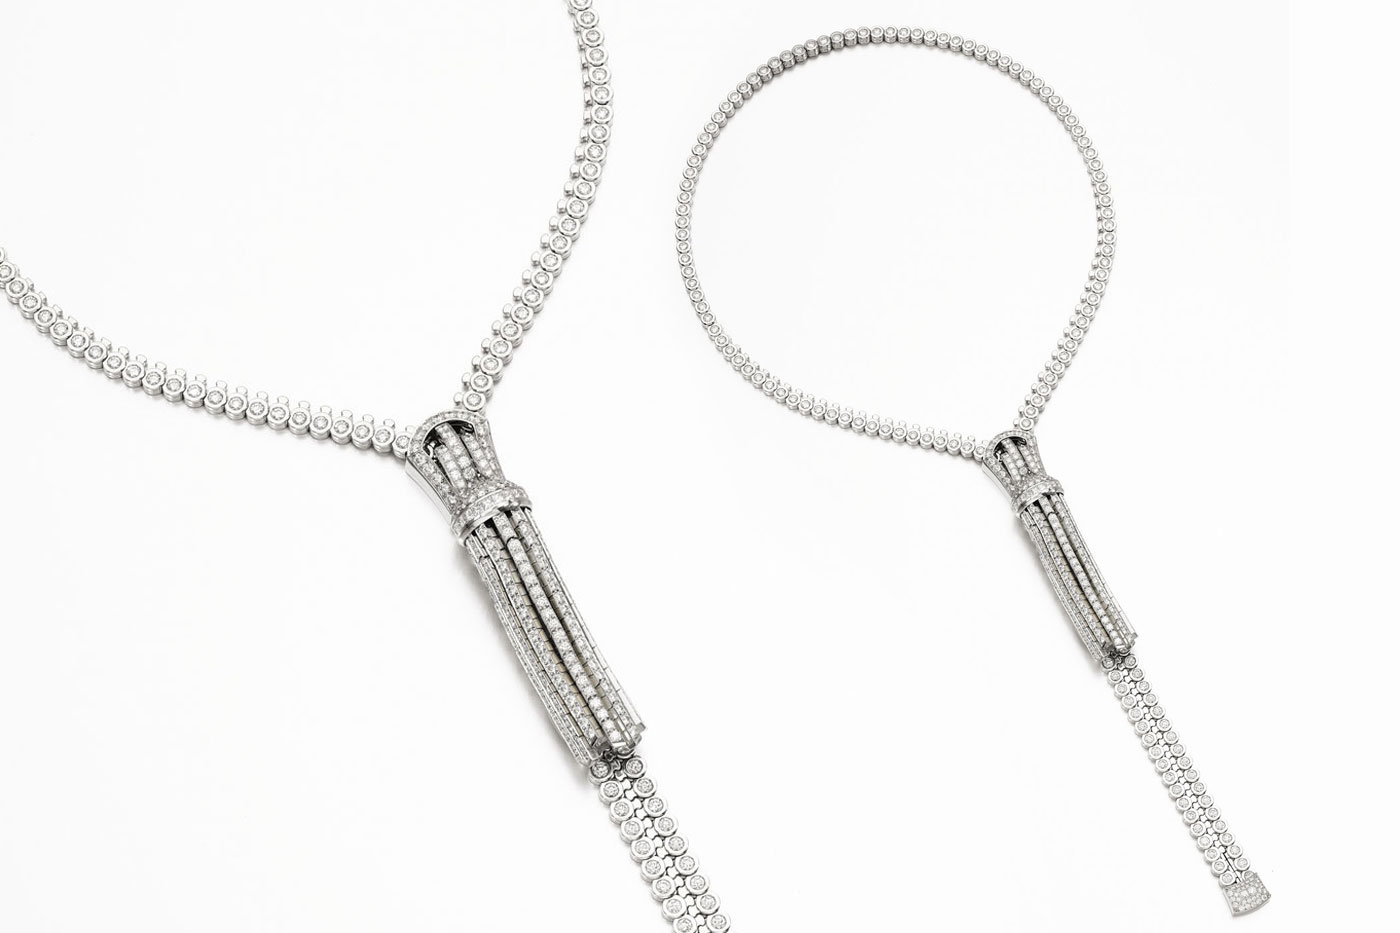 Van Cleef & Arpels diamond Zip necklace